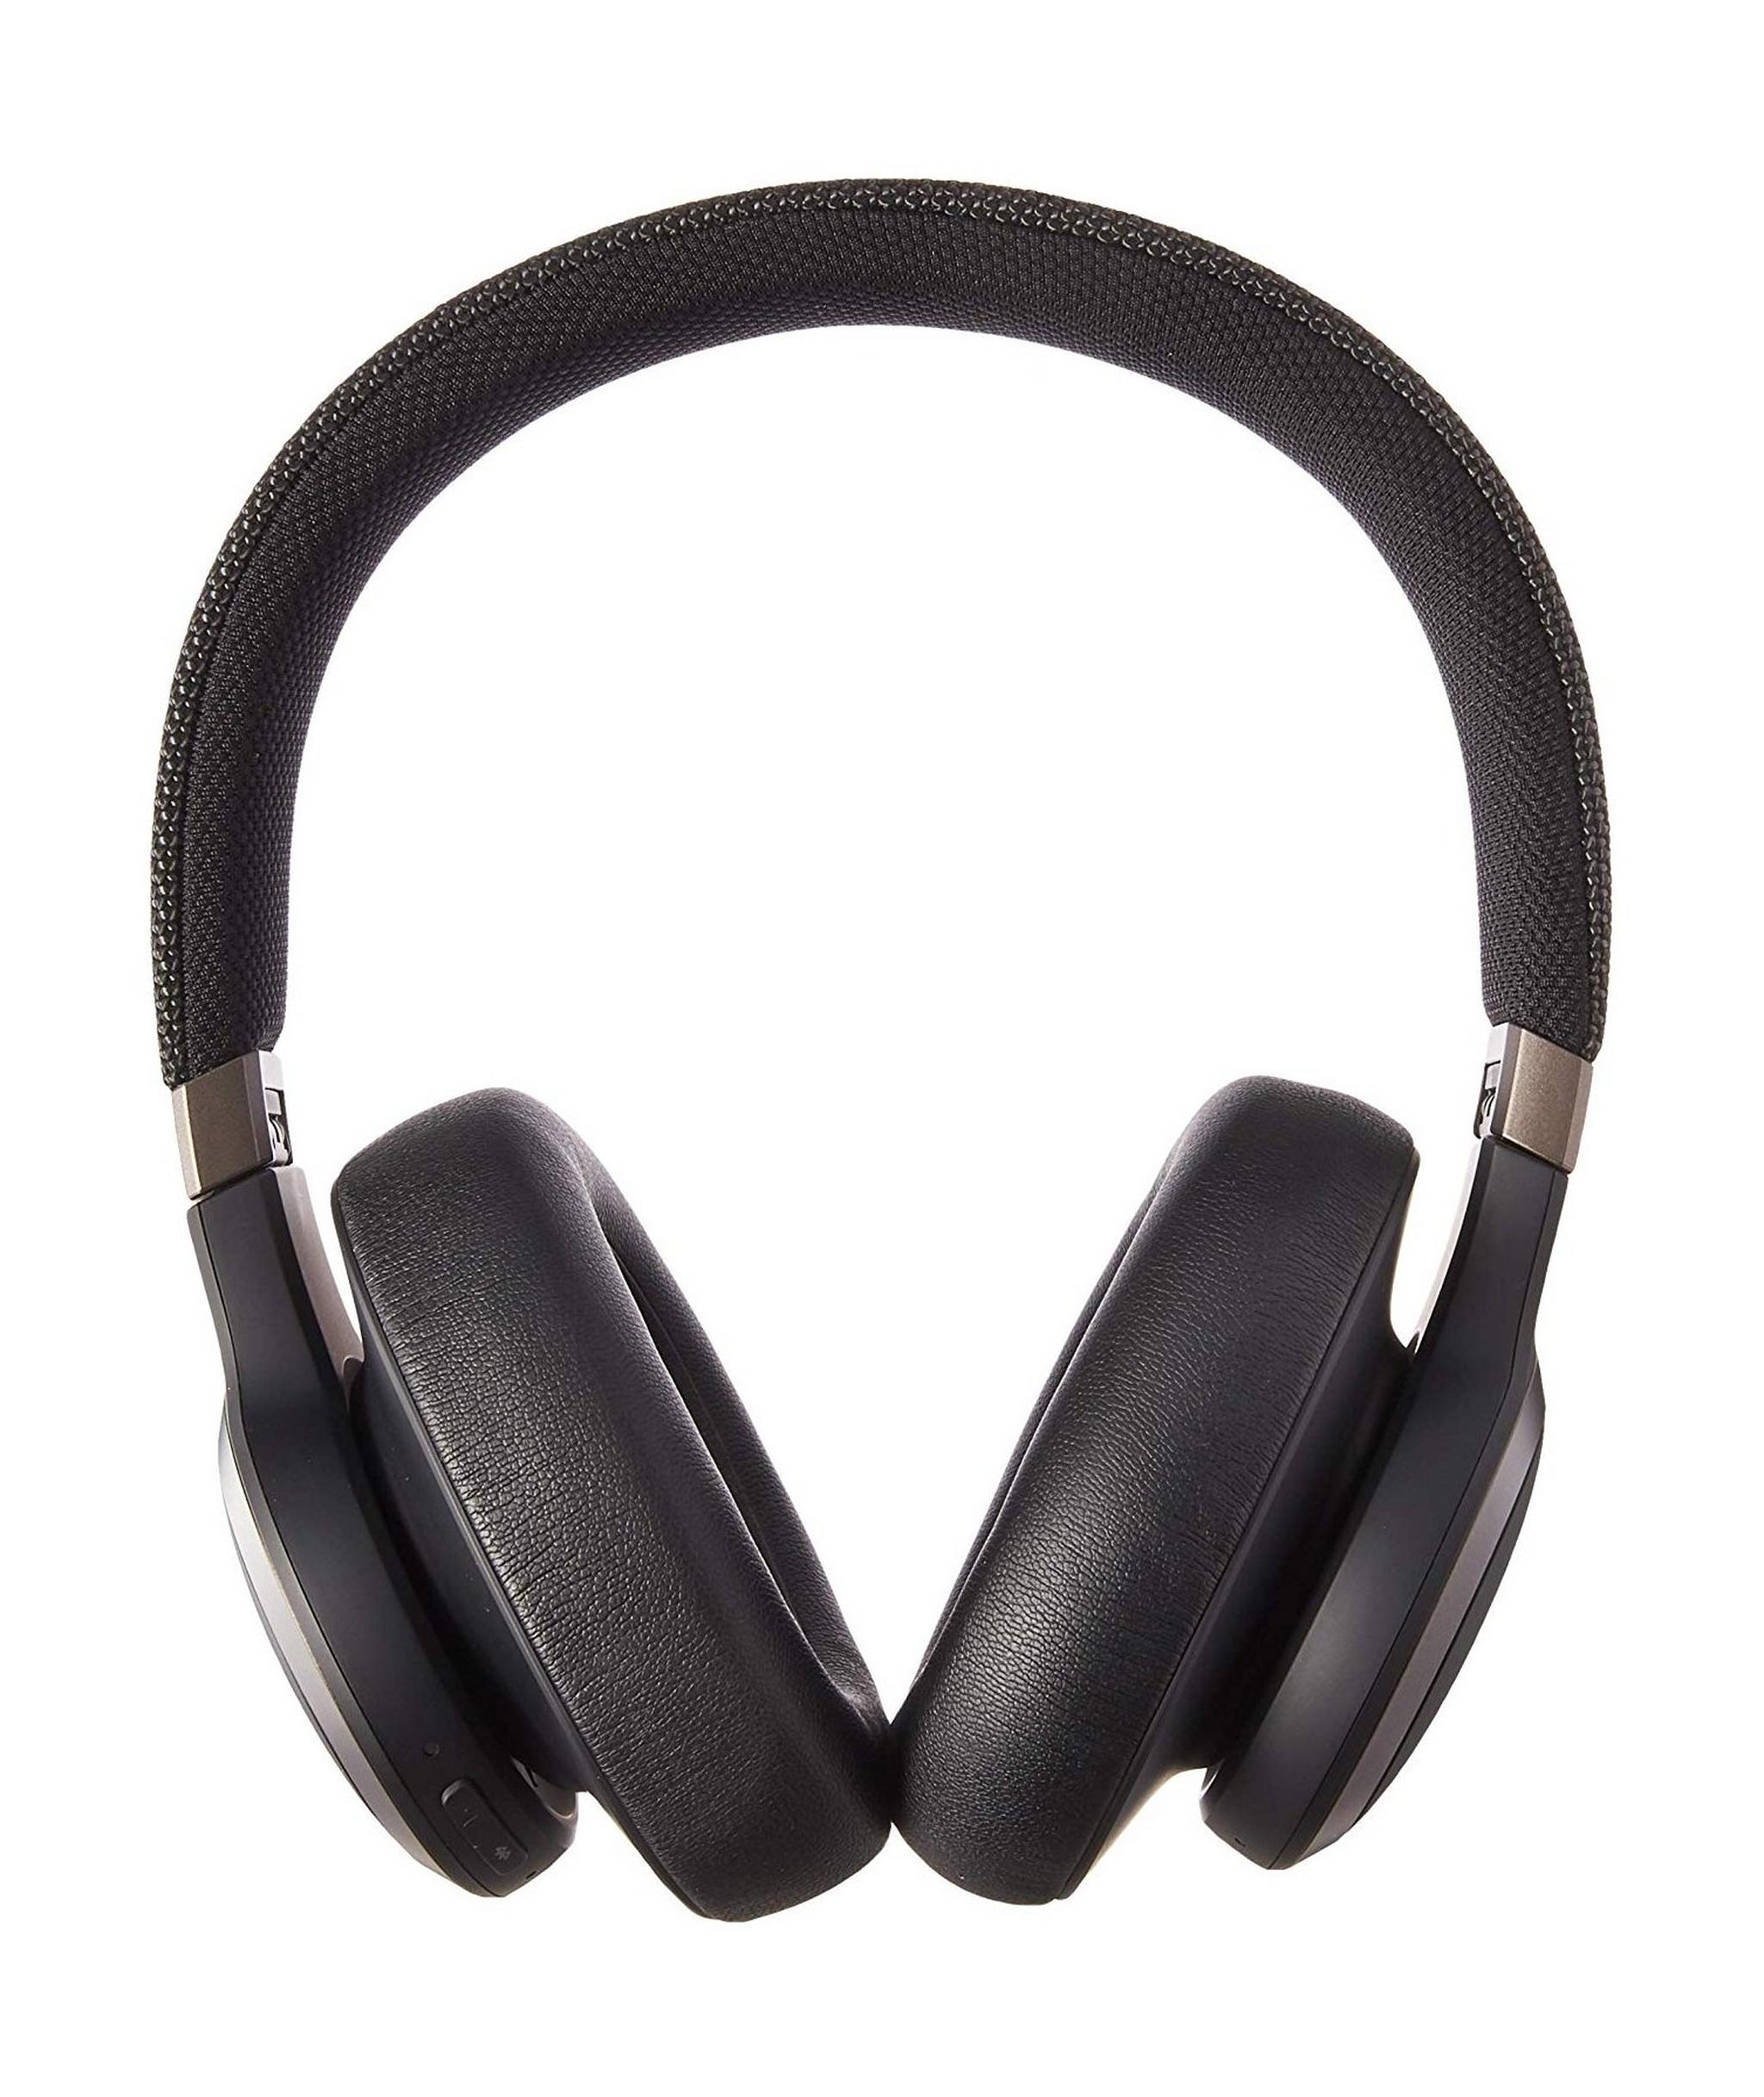 سماعة الرأس جاي بي إل لايف فوق الأذن اللاسلكية مع خاصية إلغاء الضوضاء (650BTNC) - أسود